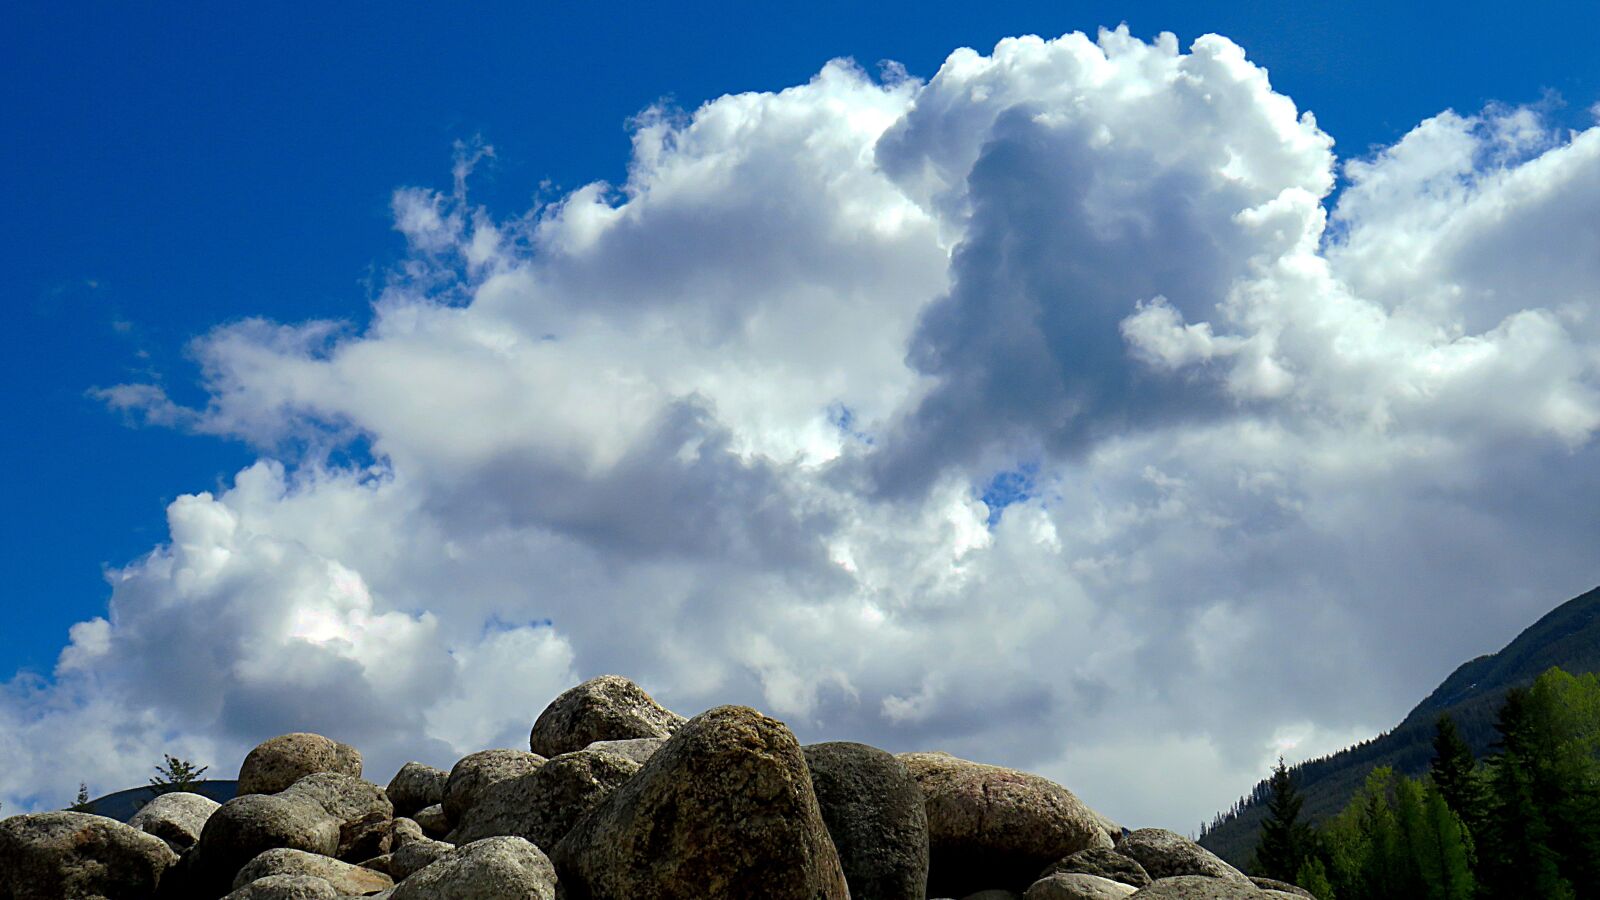 Canon PowerShot SX540 HS sample photo. Landscape, clouds, cloud formation photography